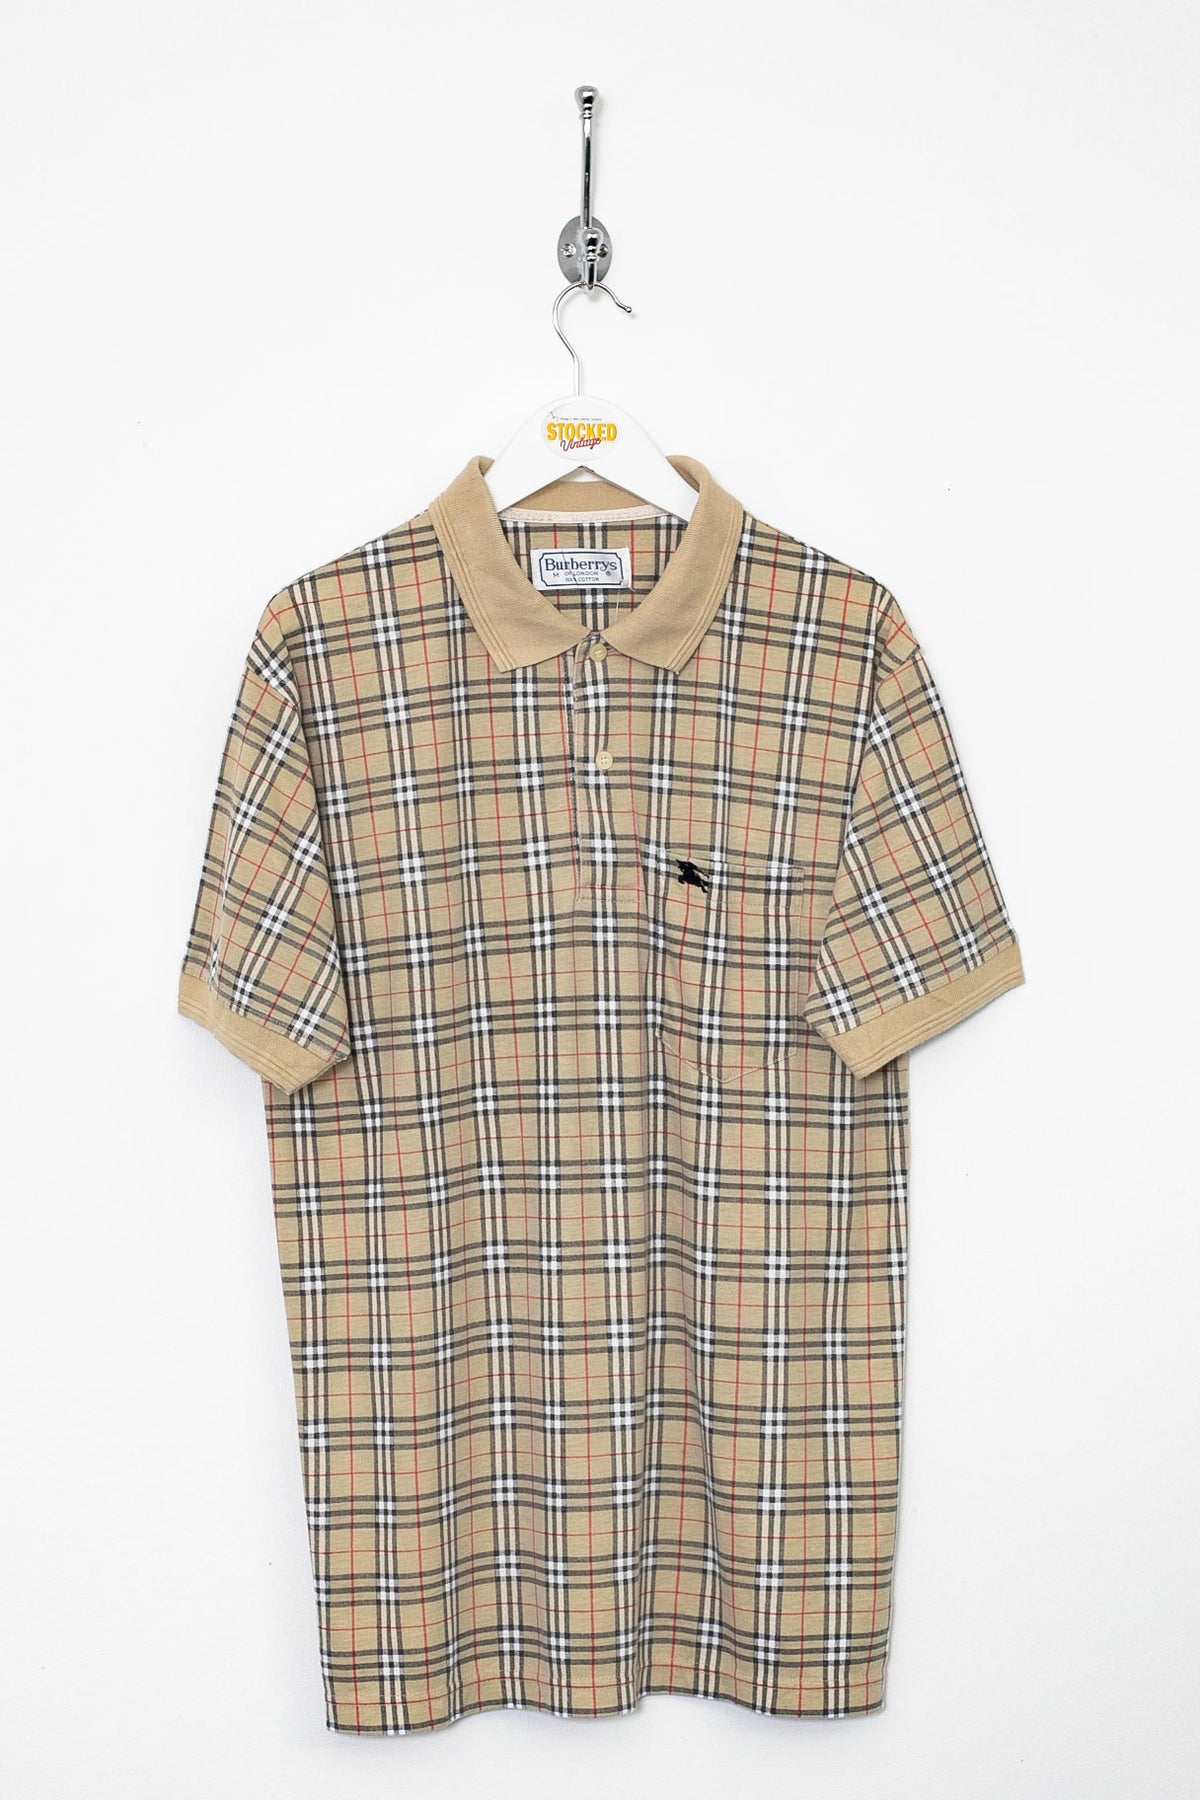 90s Burberry Nova Check Polo Shirt (M)